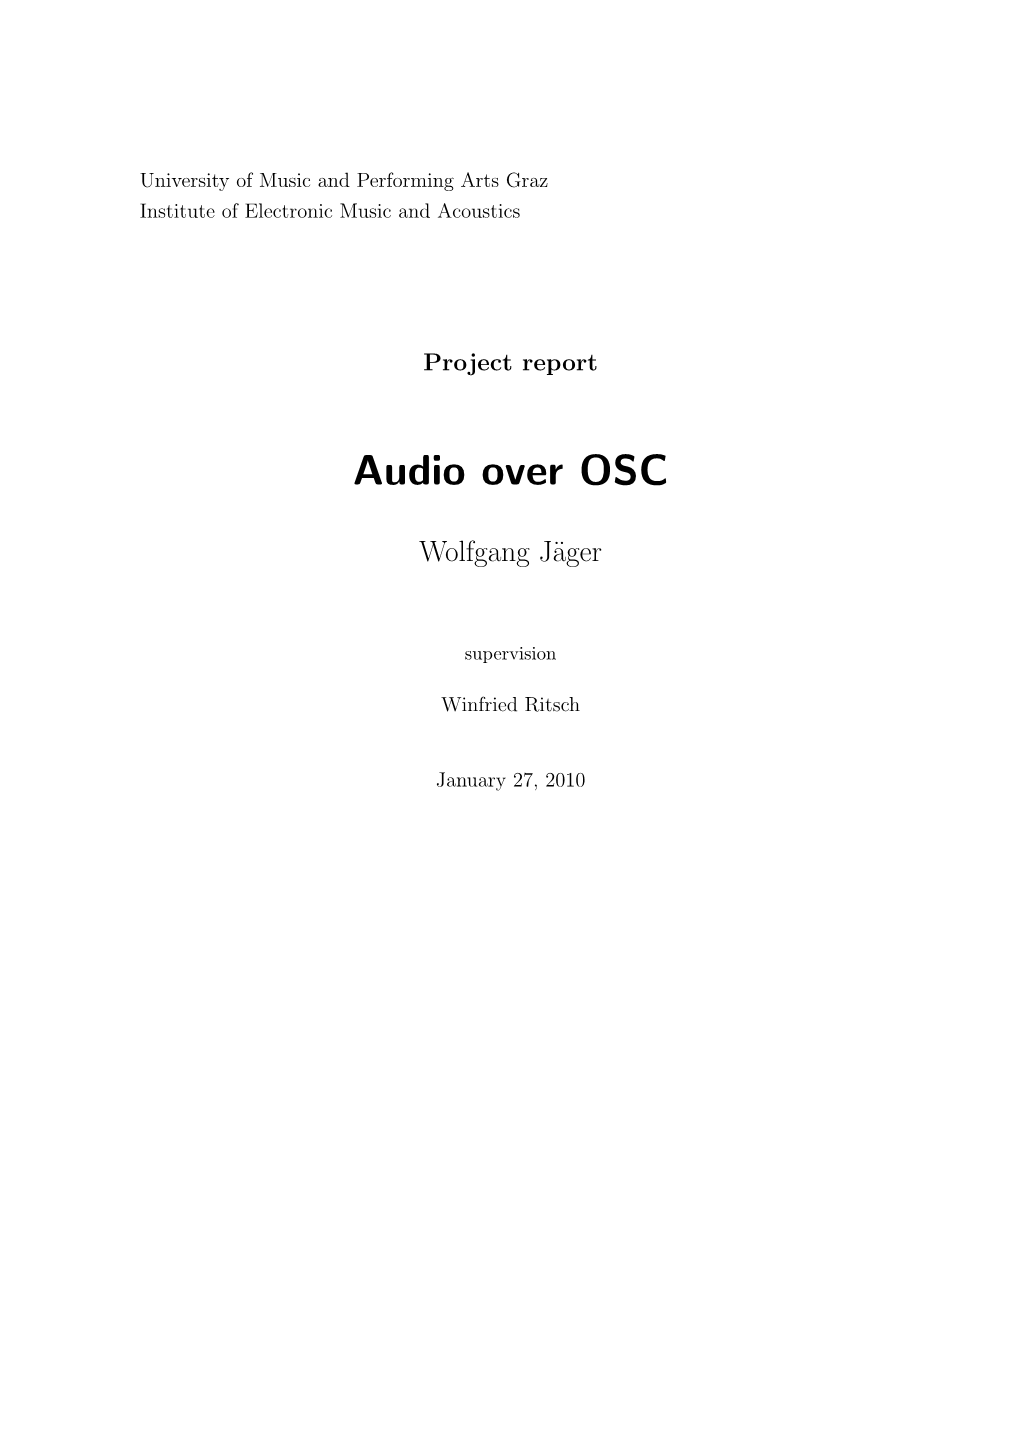 Audio Over OSC